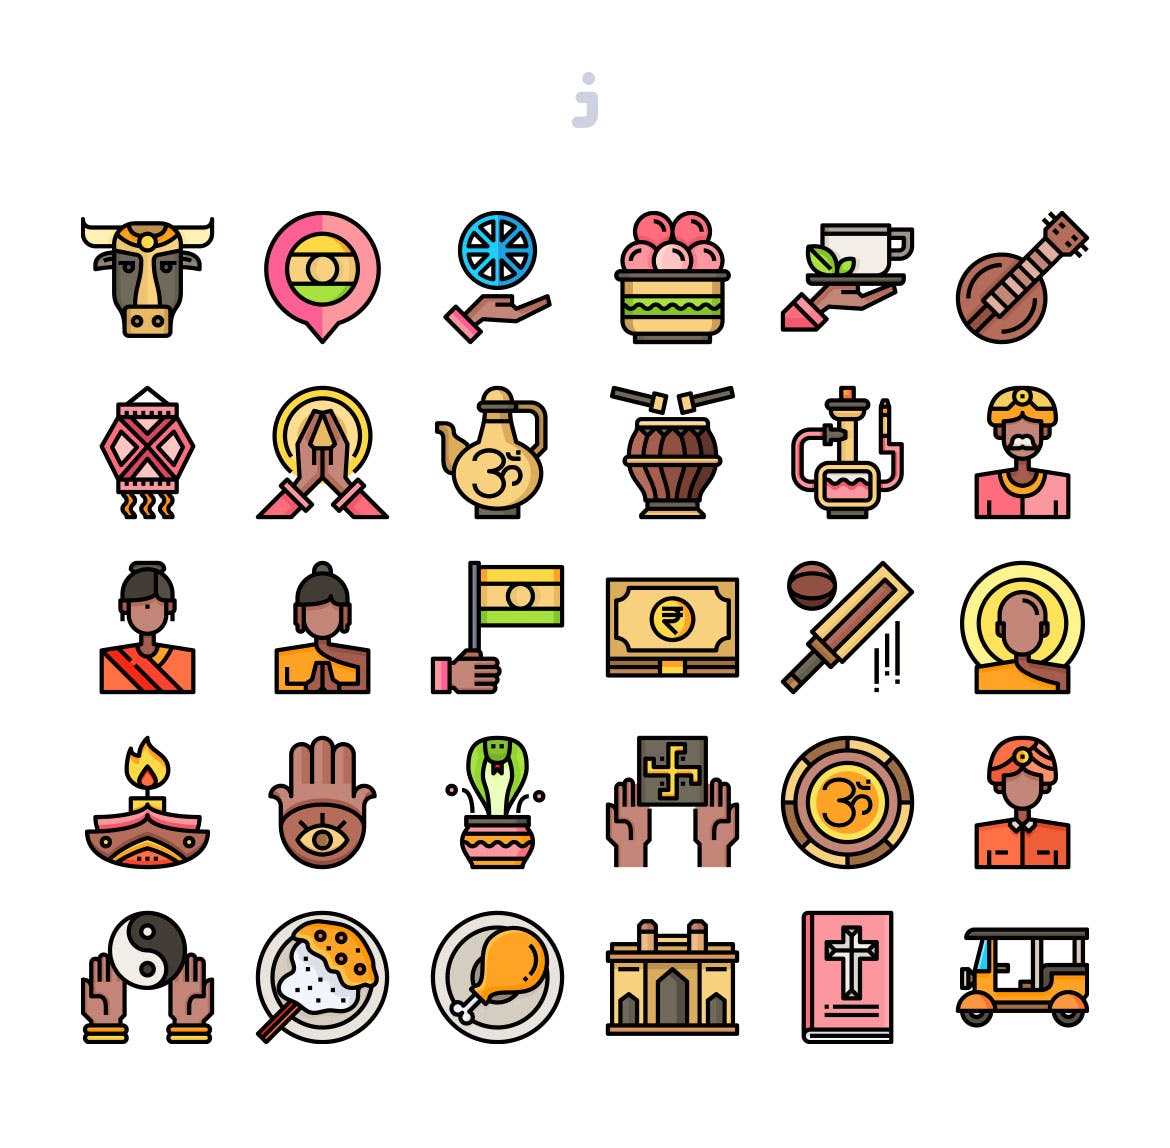 30枚印度国家民族元素彩色矢量图标 30 India Element Icons插图(1)